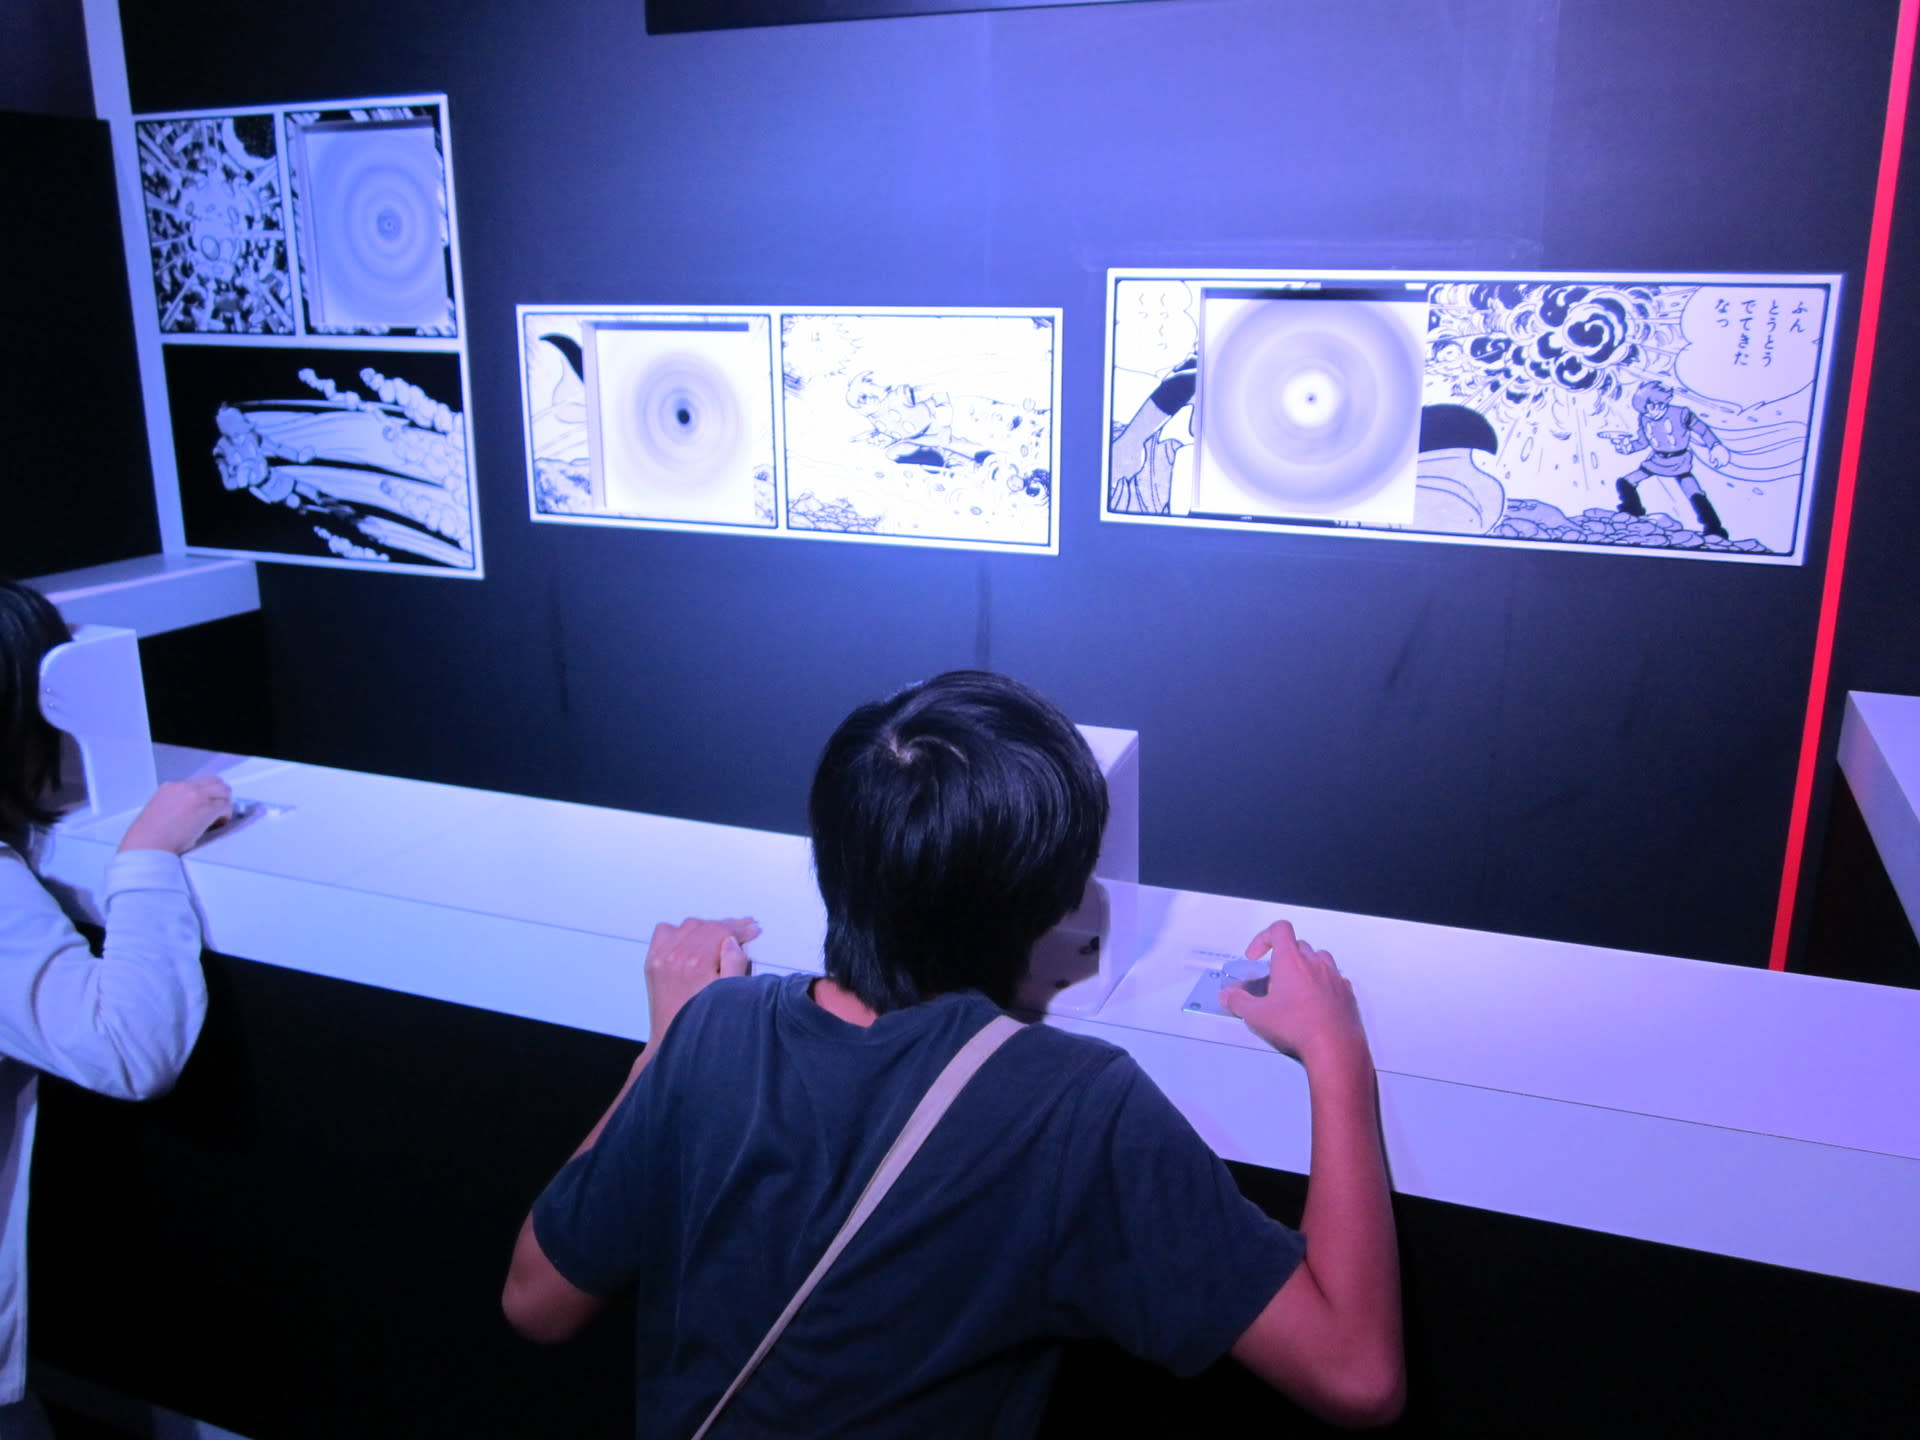 日本科学未来館で 『科学で体験するマンガ展』 を見ました。 半谷範一の「オレは大したことない奴」日記